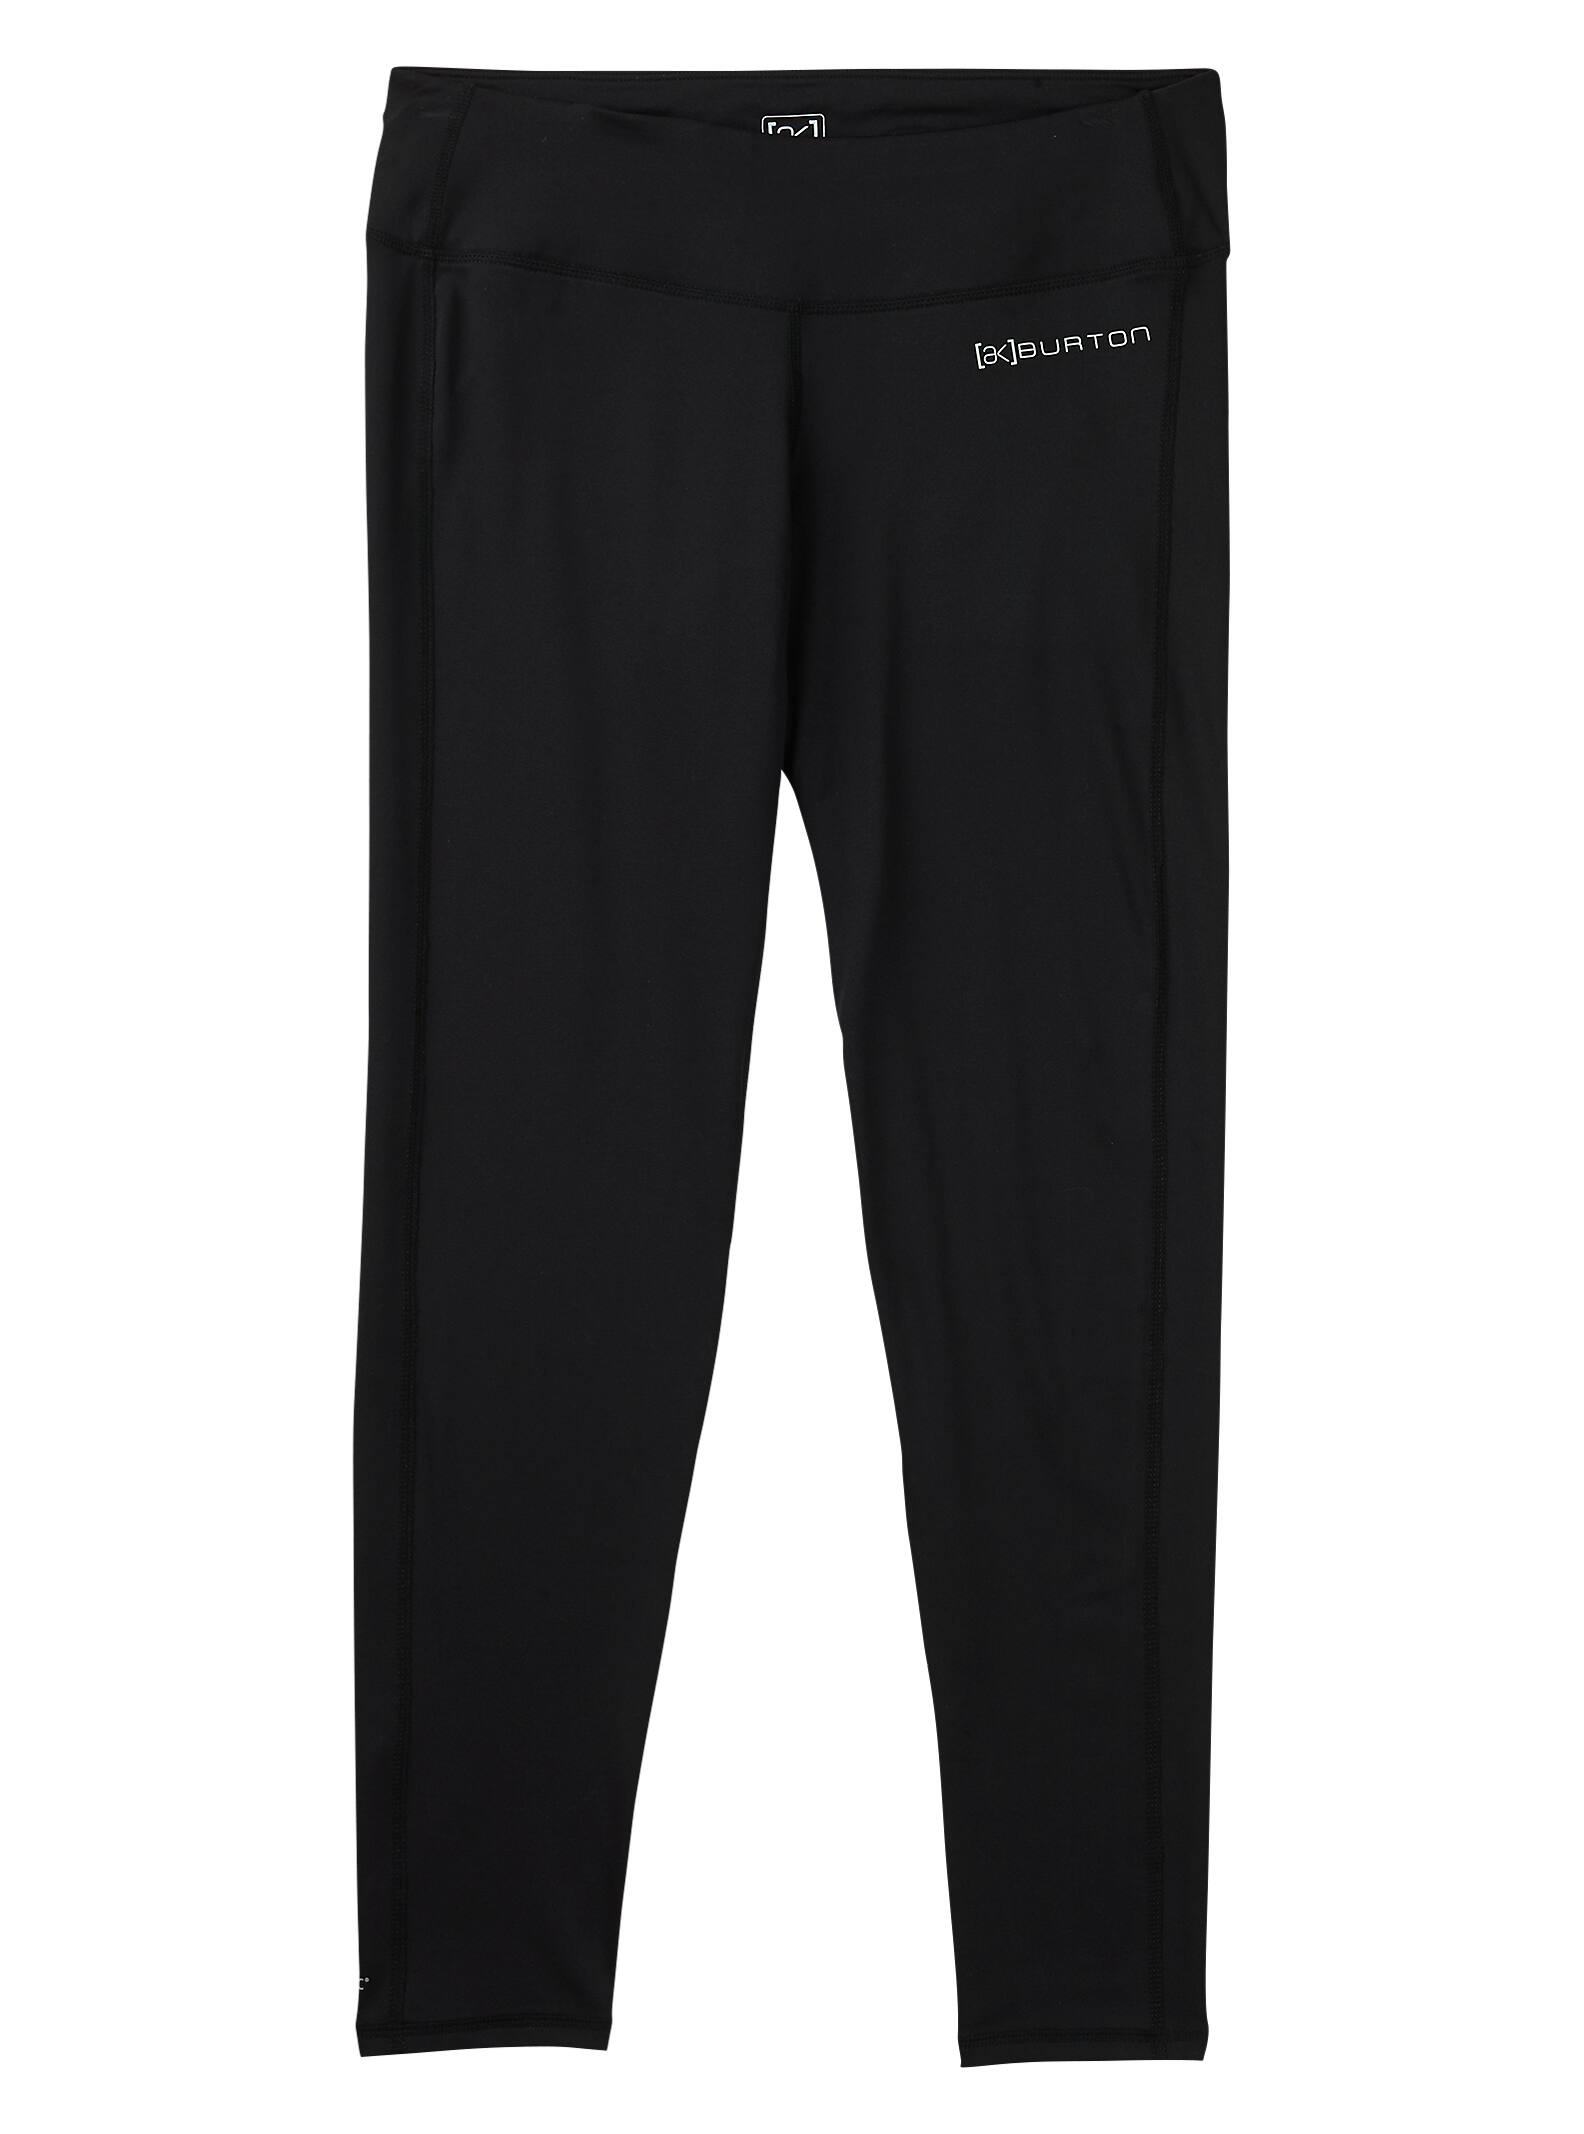 Burton Women's [ak]® Power Stretch® Pant, True Black, XL